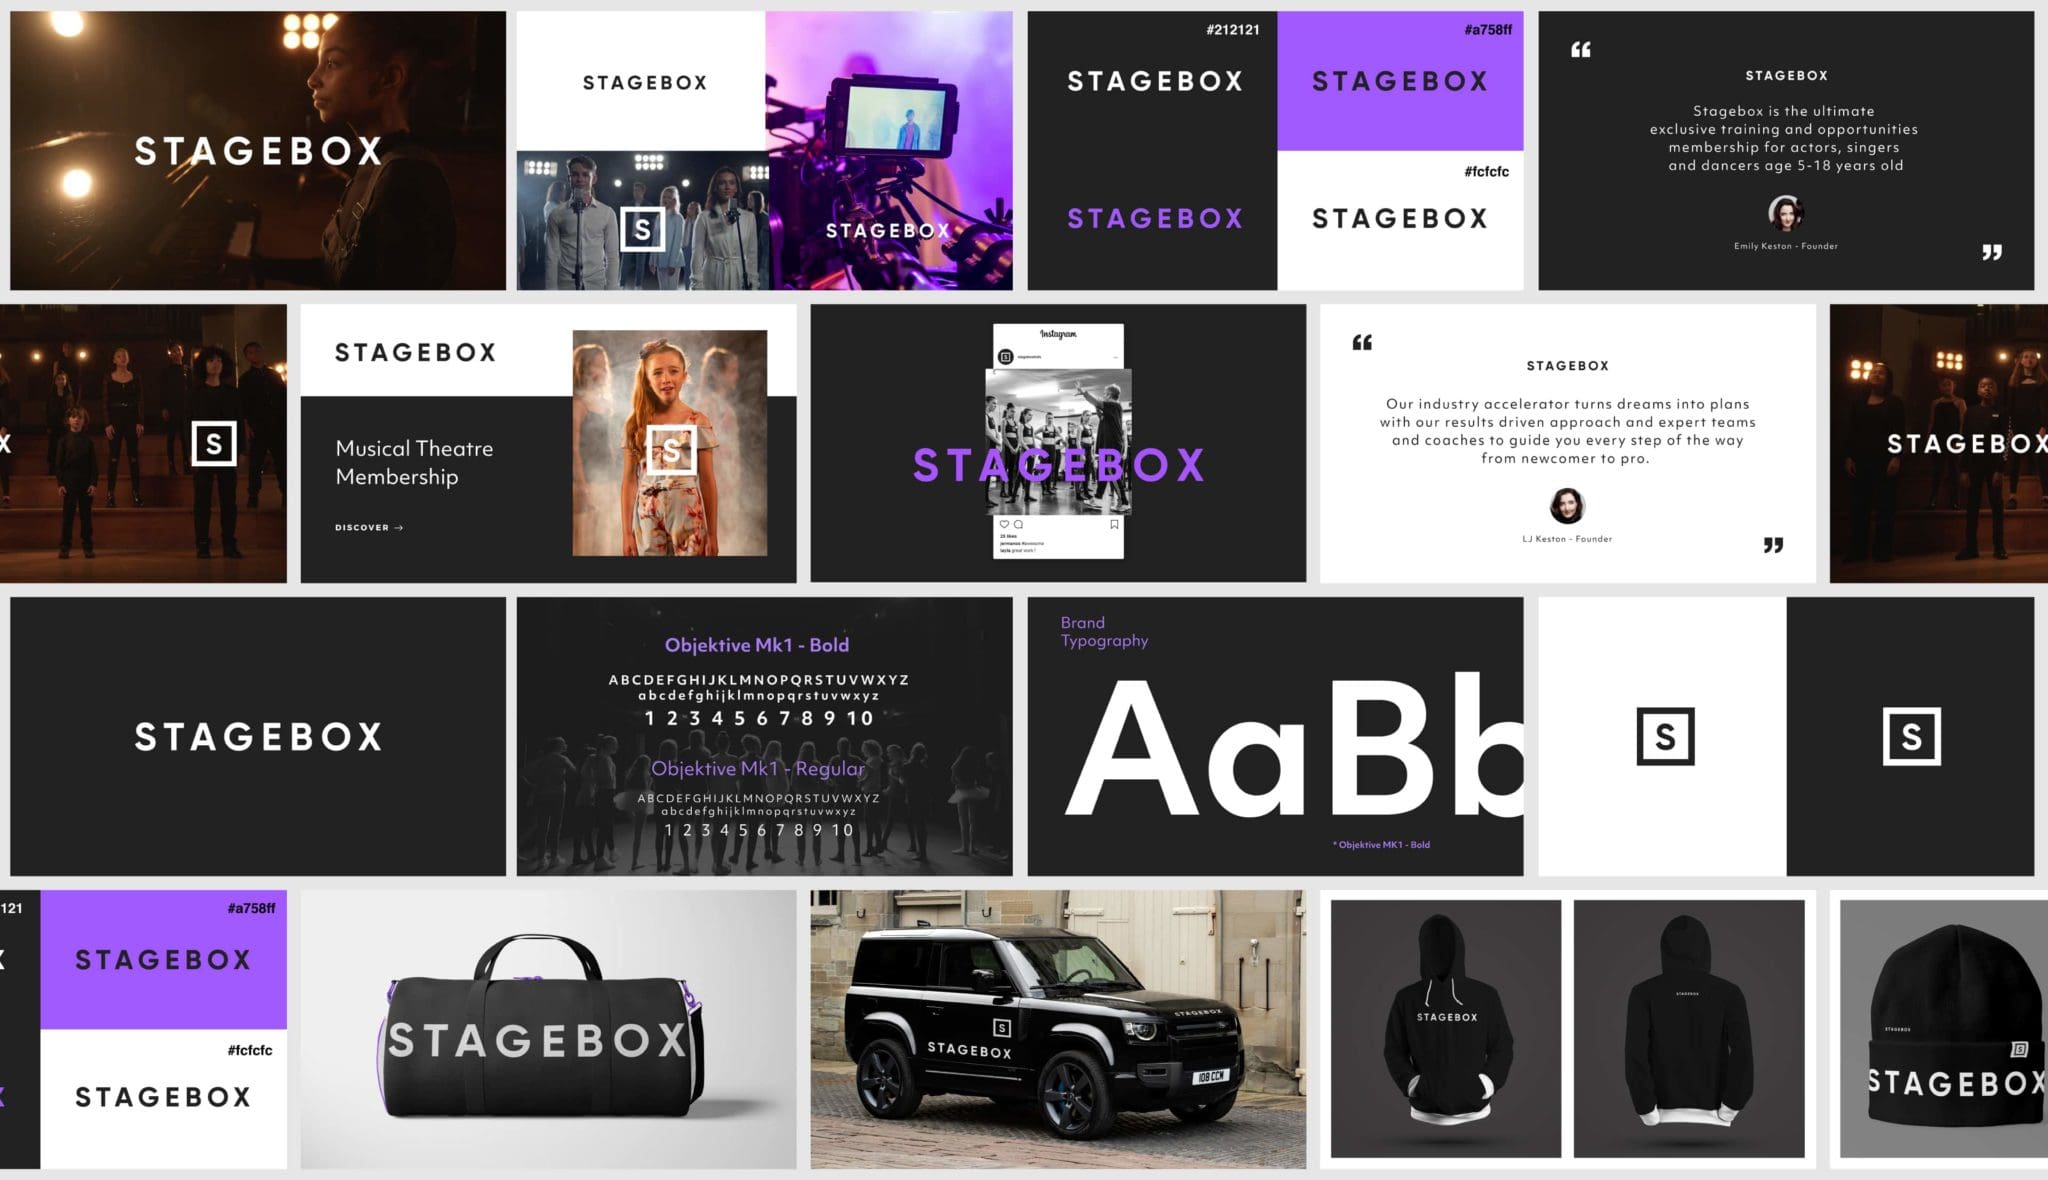 Stagebox Brand Overview